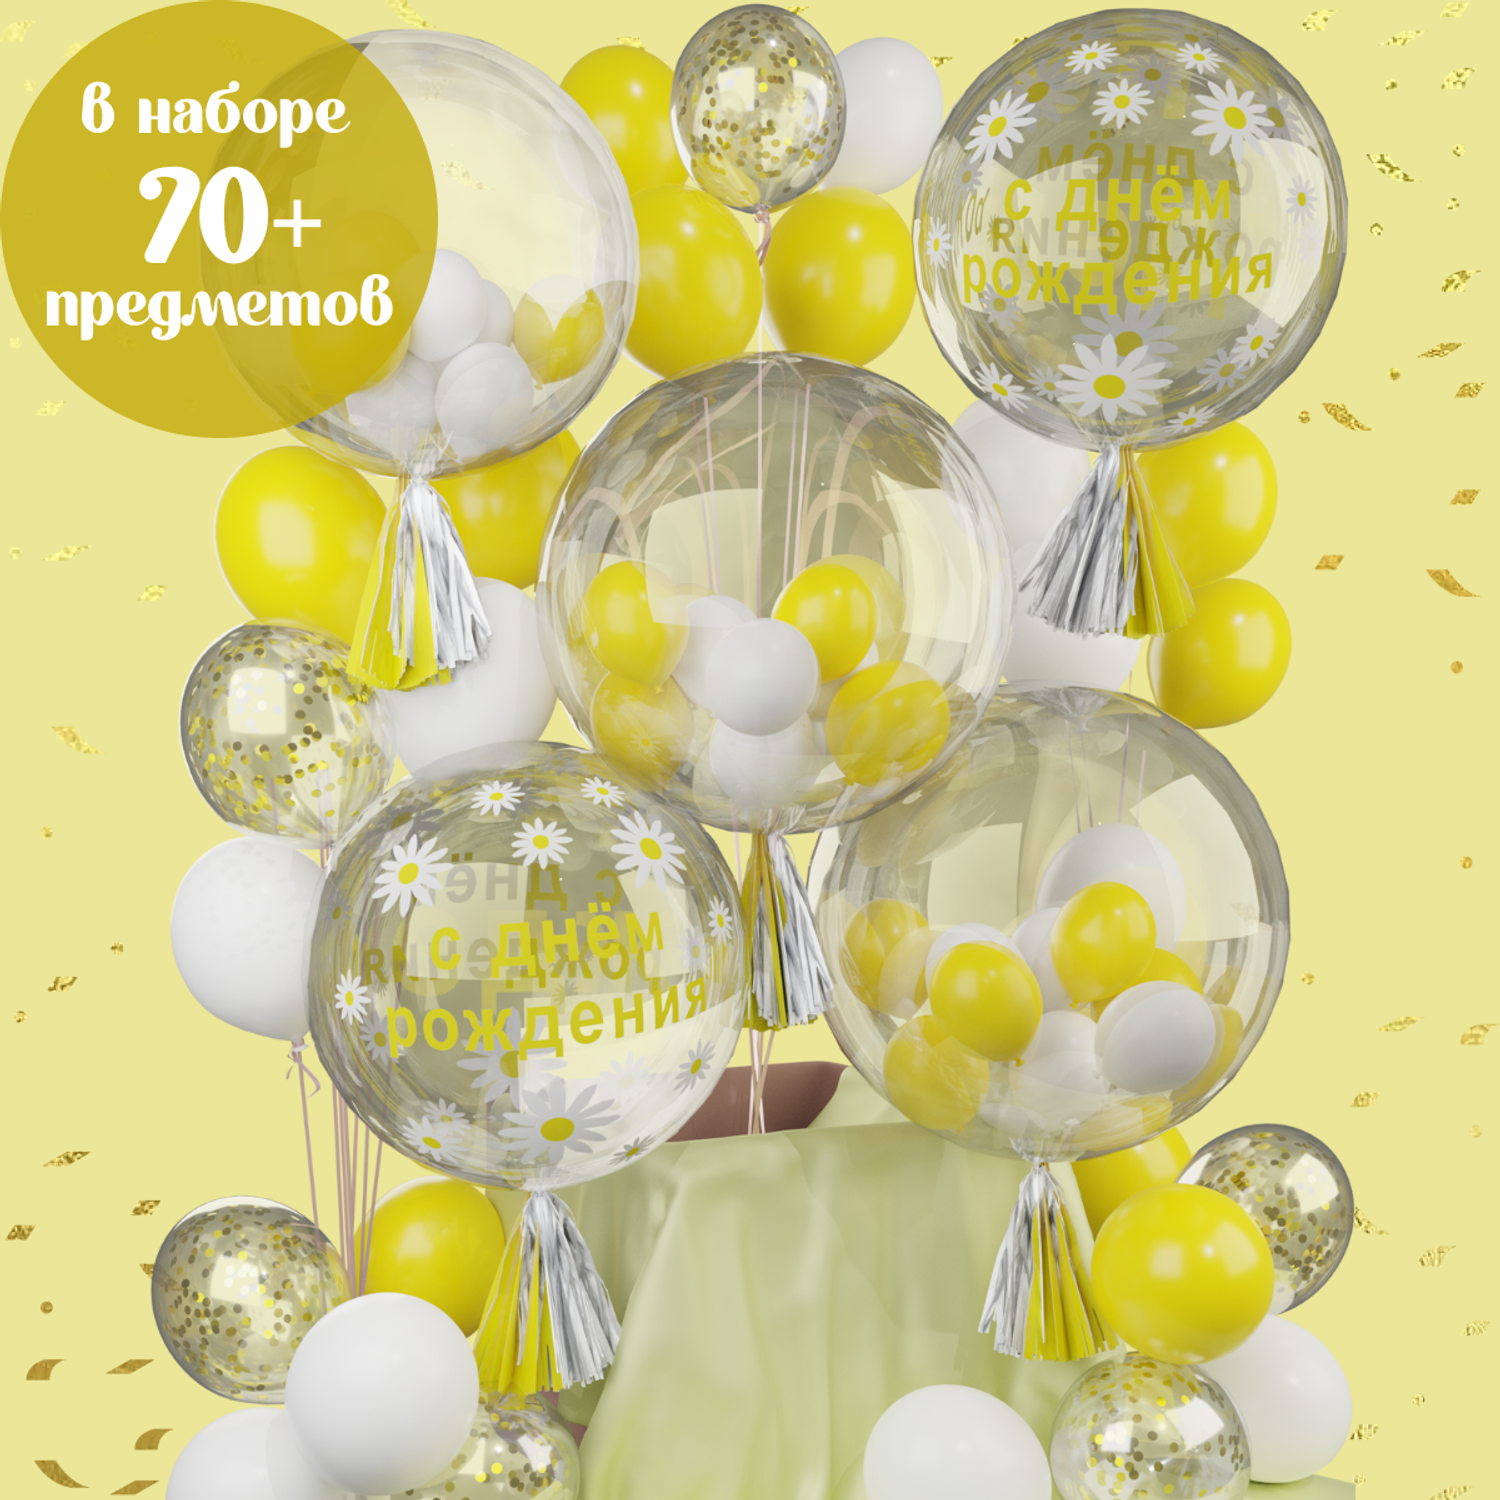 Воздушные шары набор баблс Мишины шарики для фотозоны и праздничного оформления детского дня рождения - фото 1